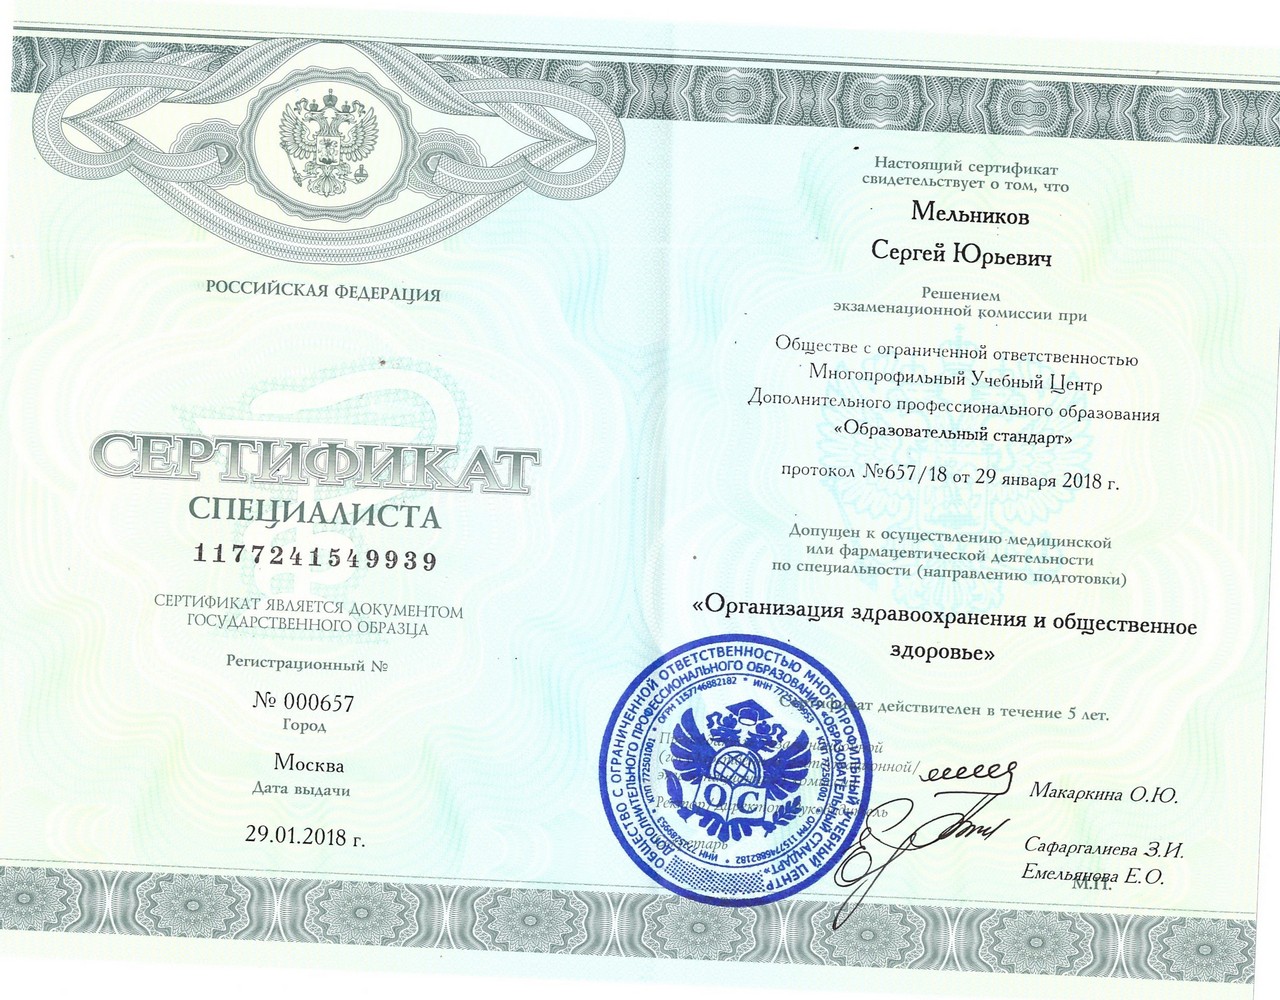 Мельников Сертификат Здоровье